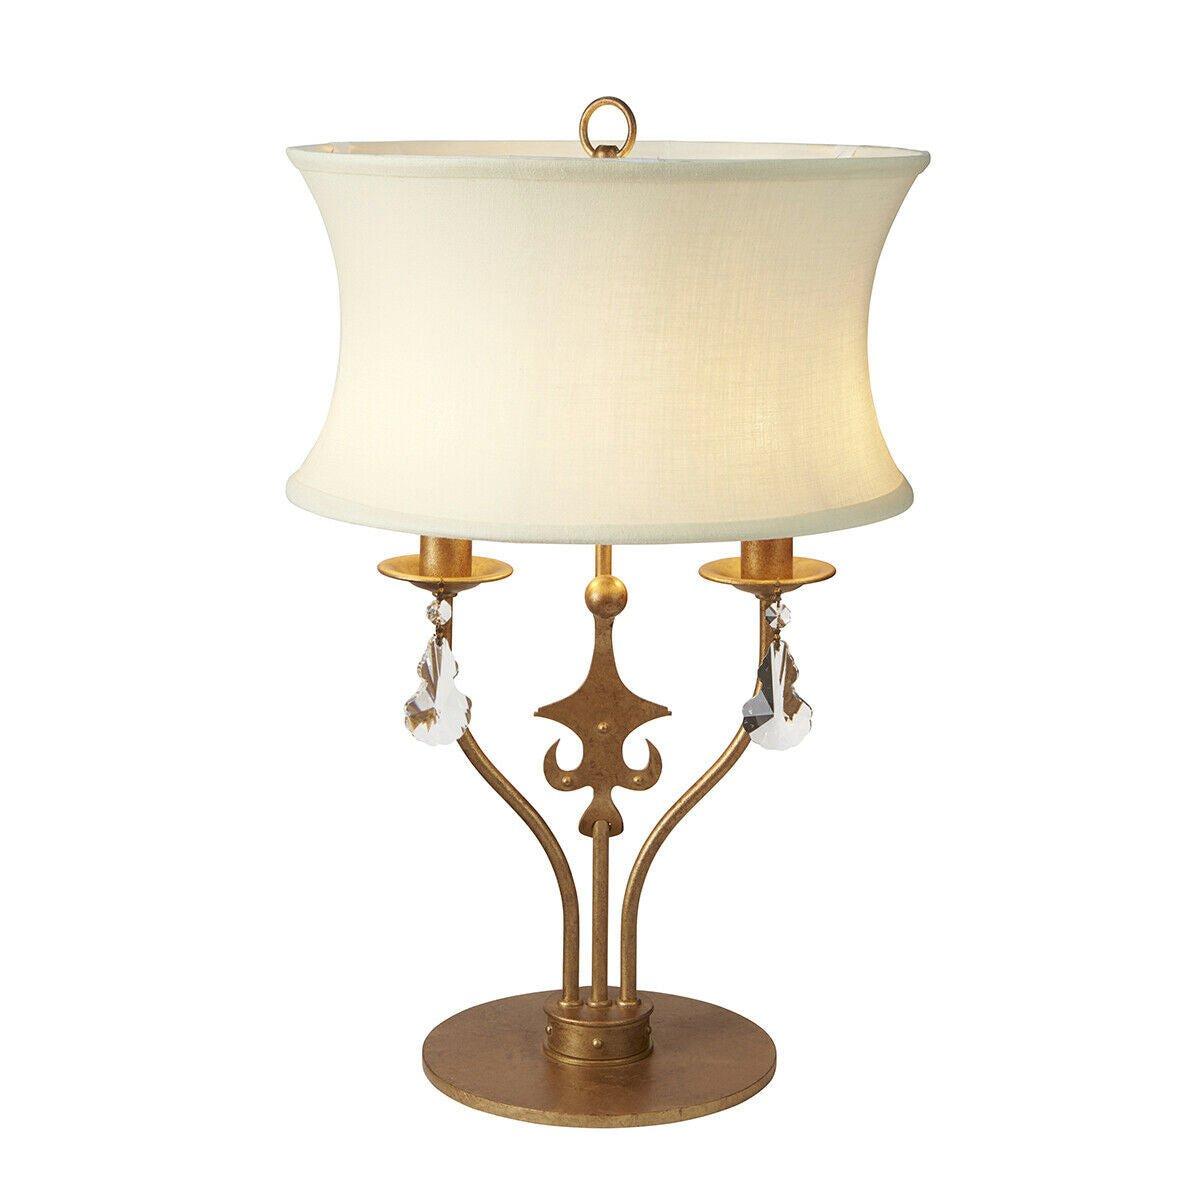 2 Bulb Twin Table Lamp Cream Shade Gold Patina LED E14 60W Bulb